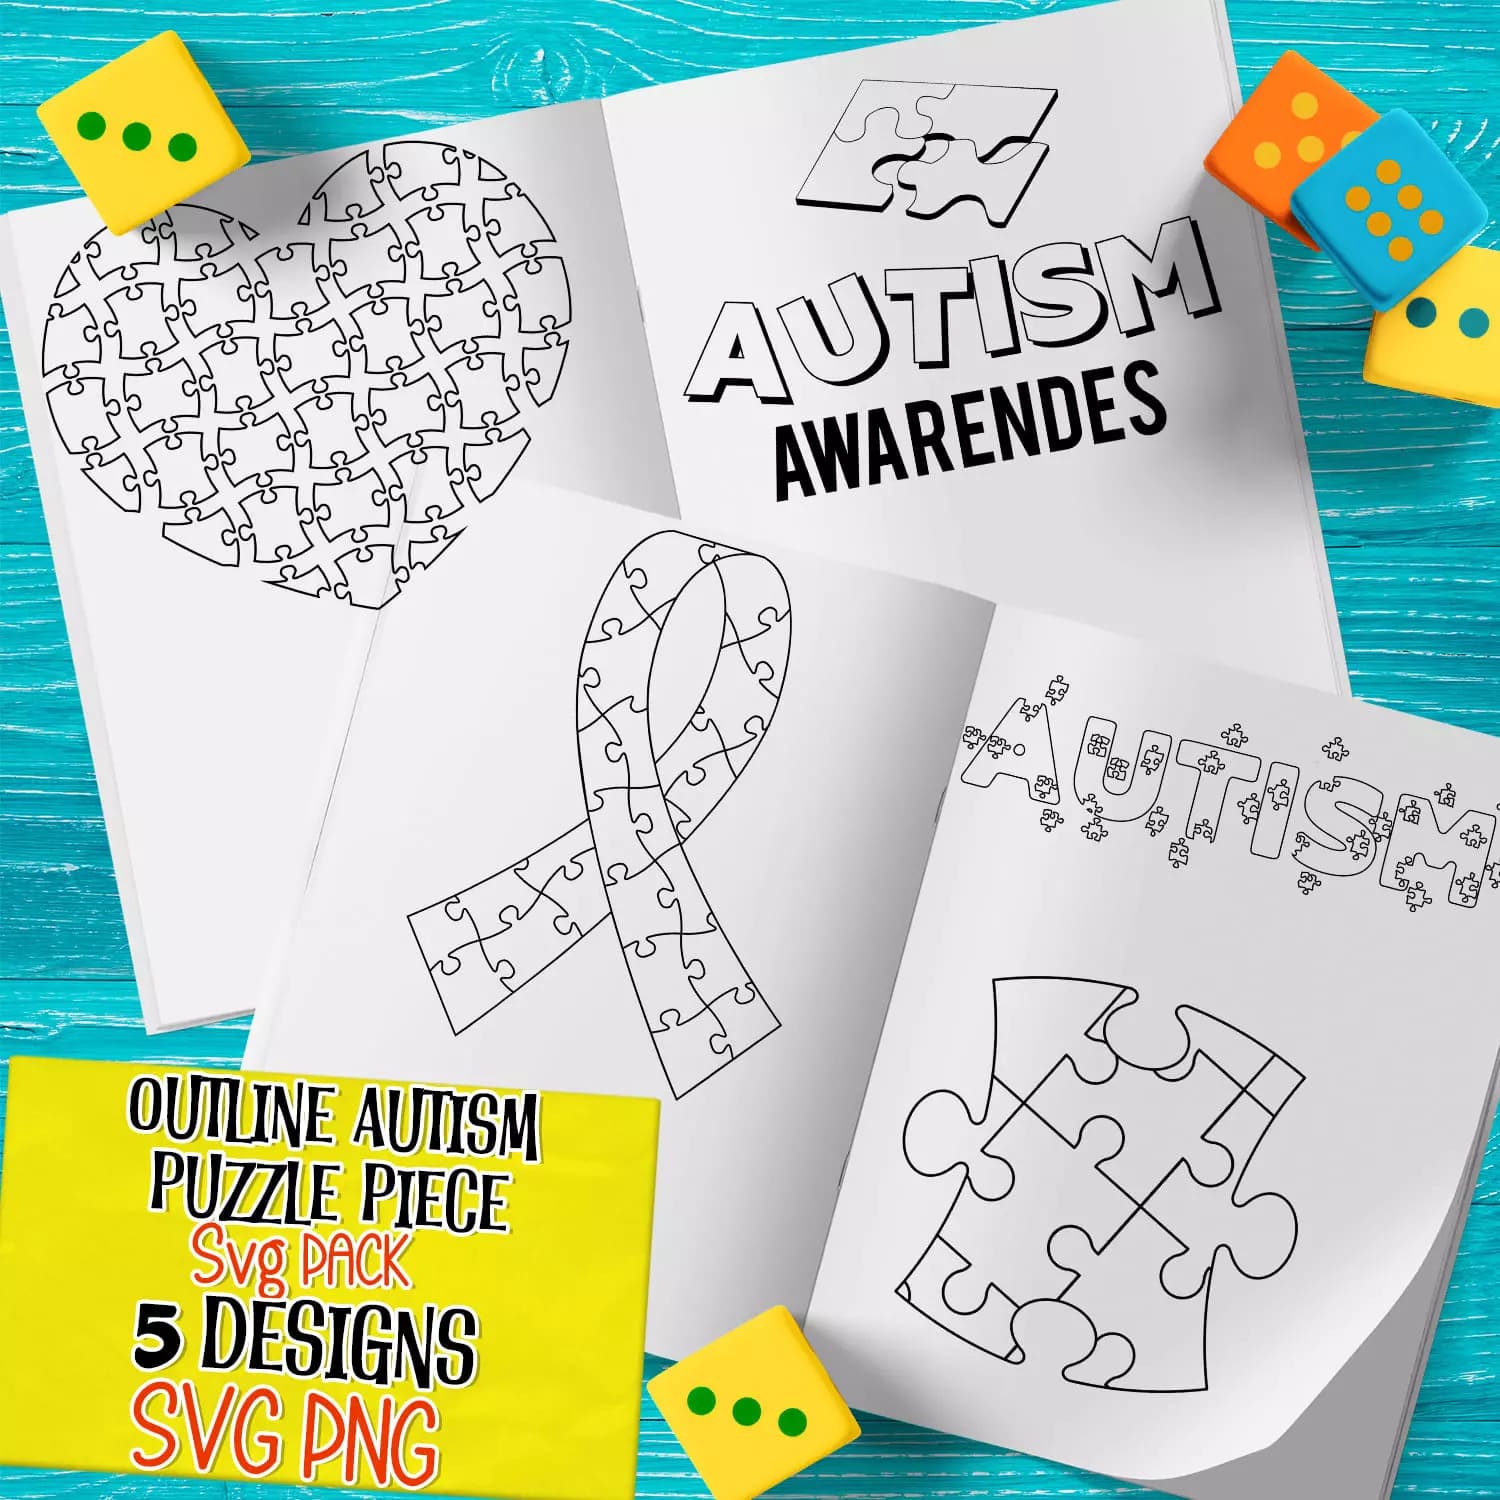 Outline Autism Puzzle Piece SVG Preview.